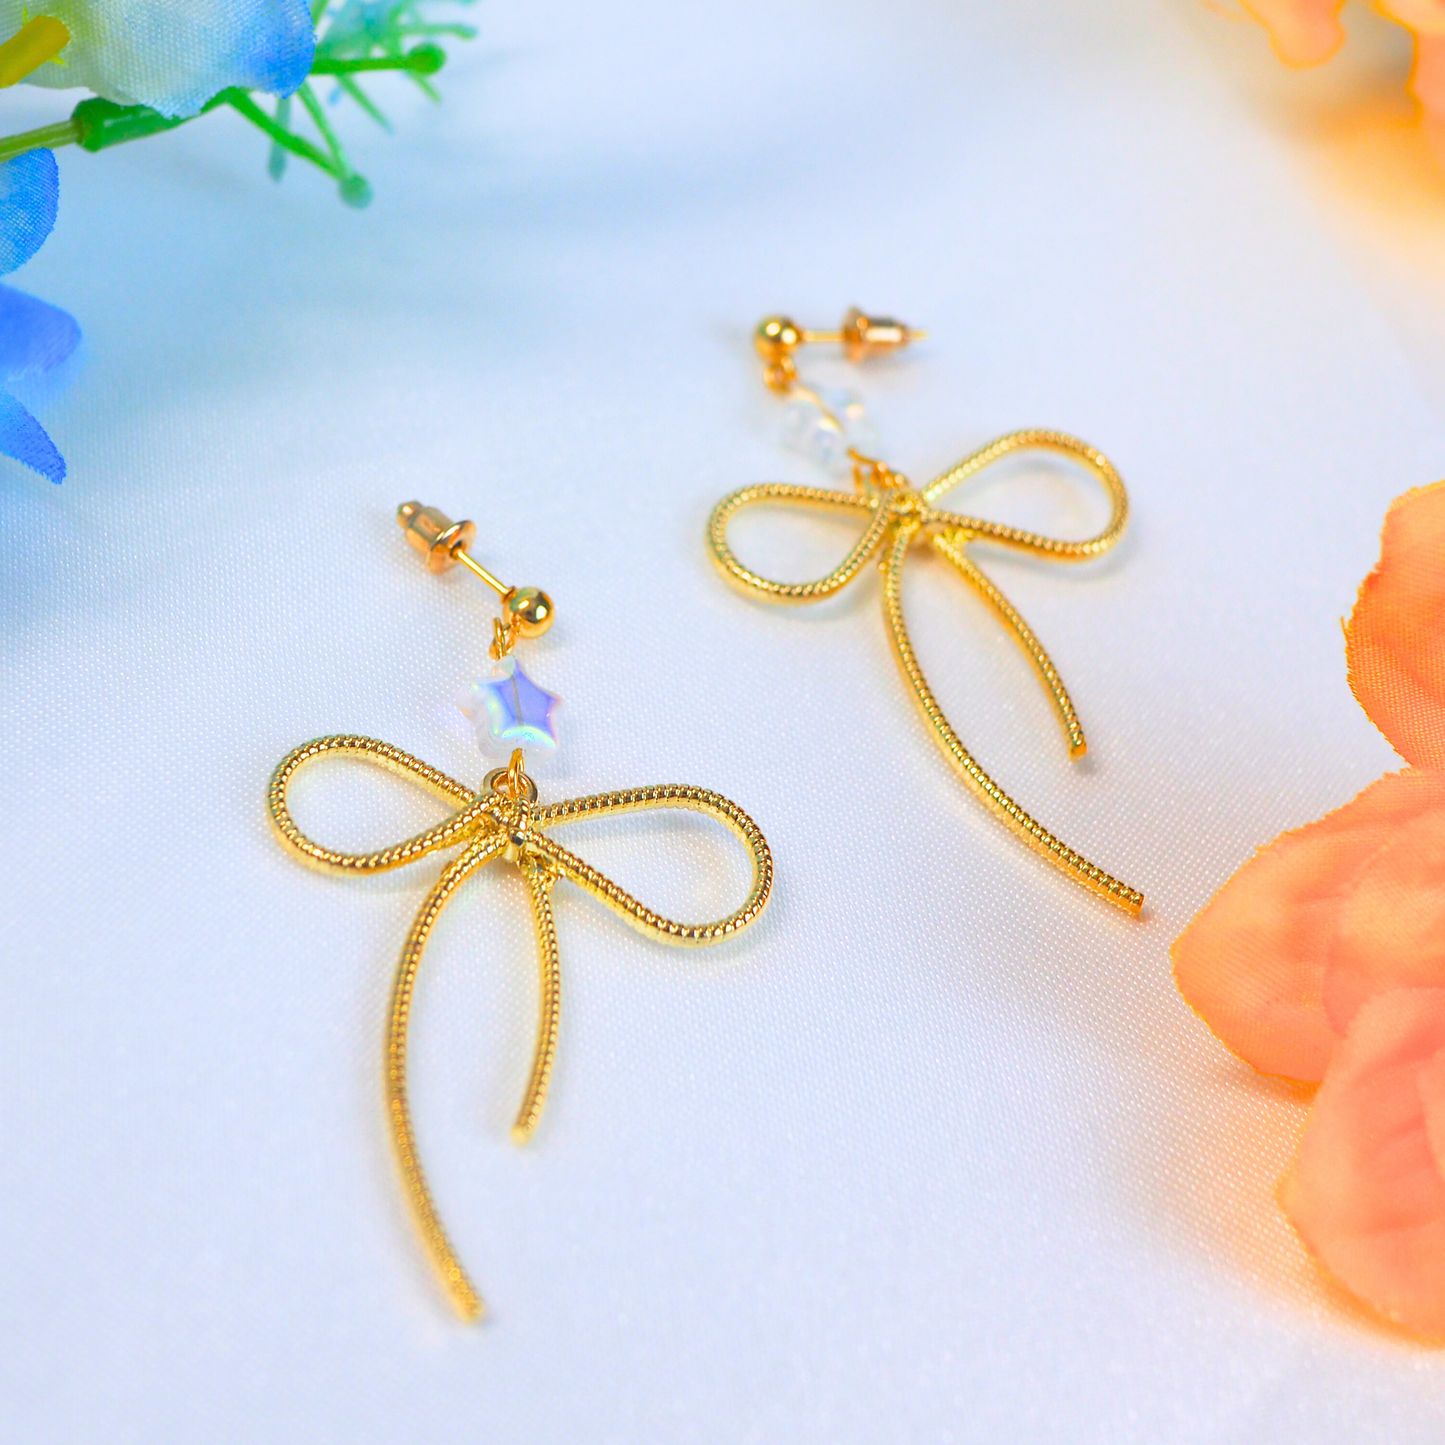 Starry Bow Earrings